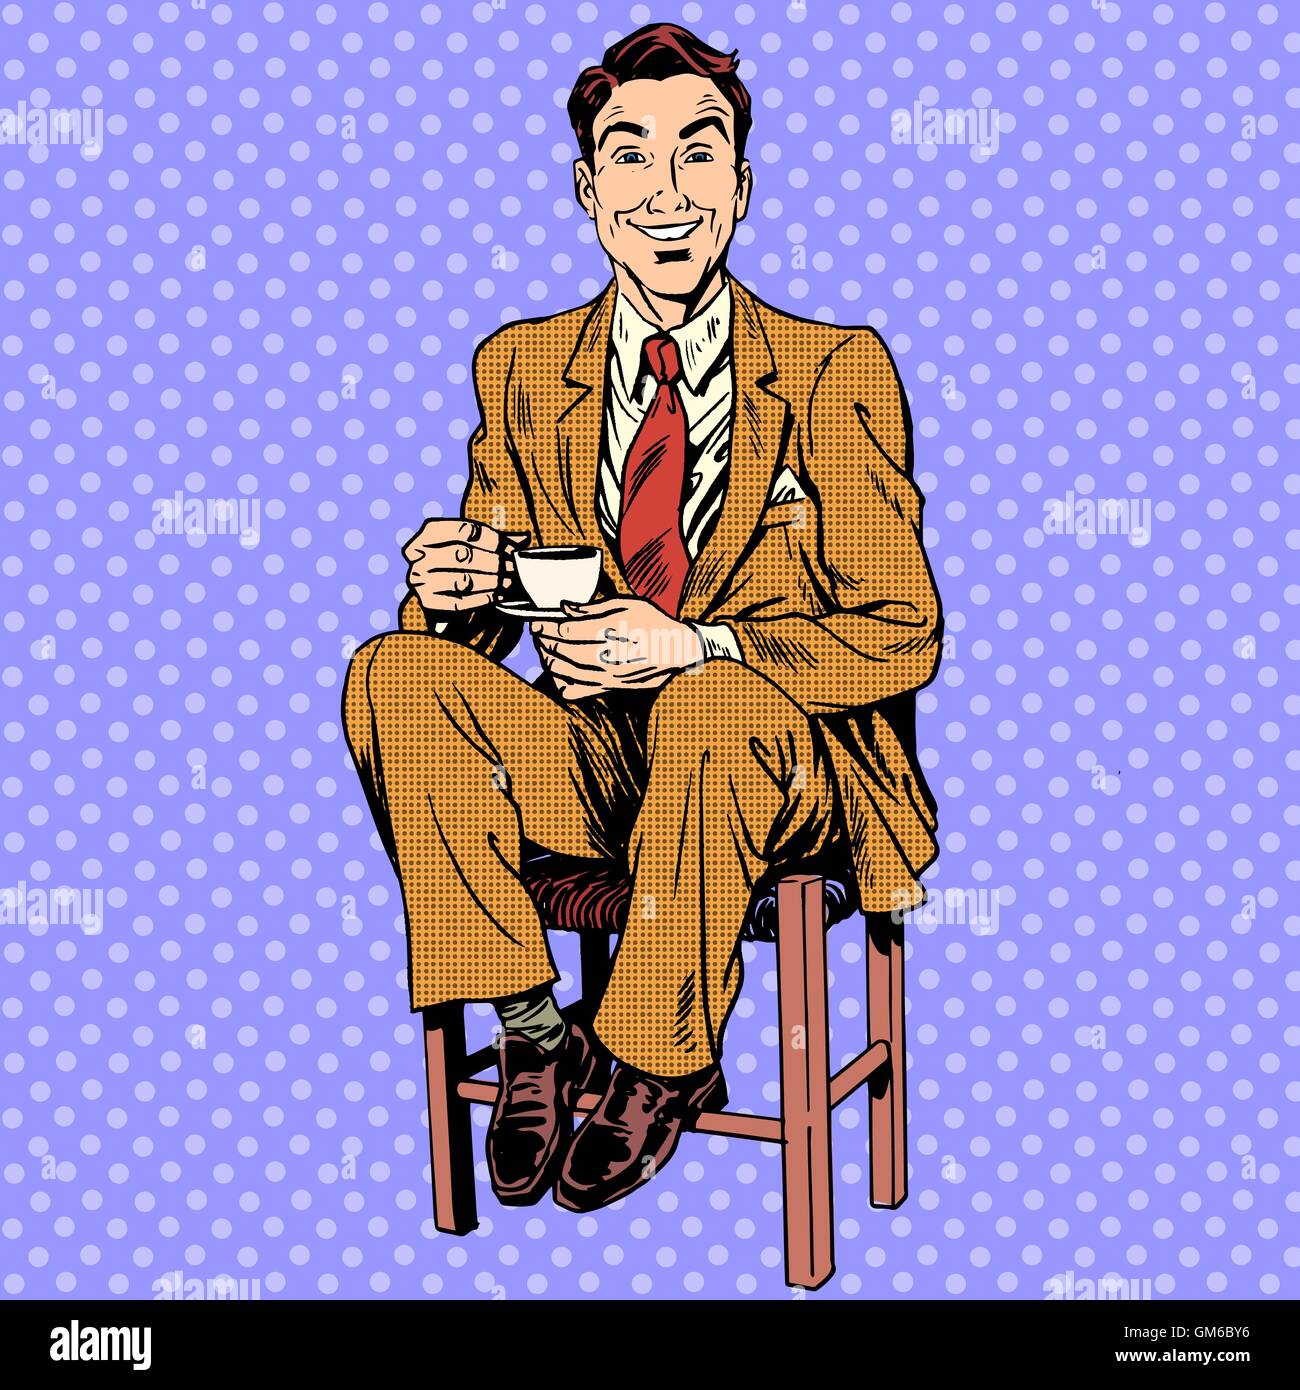 Man drinking tea sitting on the stool Stock Vector Image & Art - Alamy